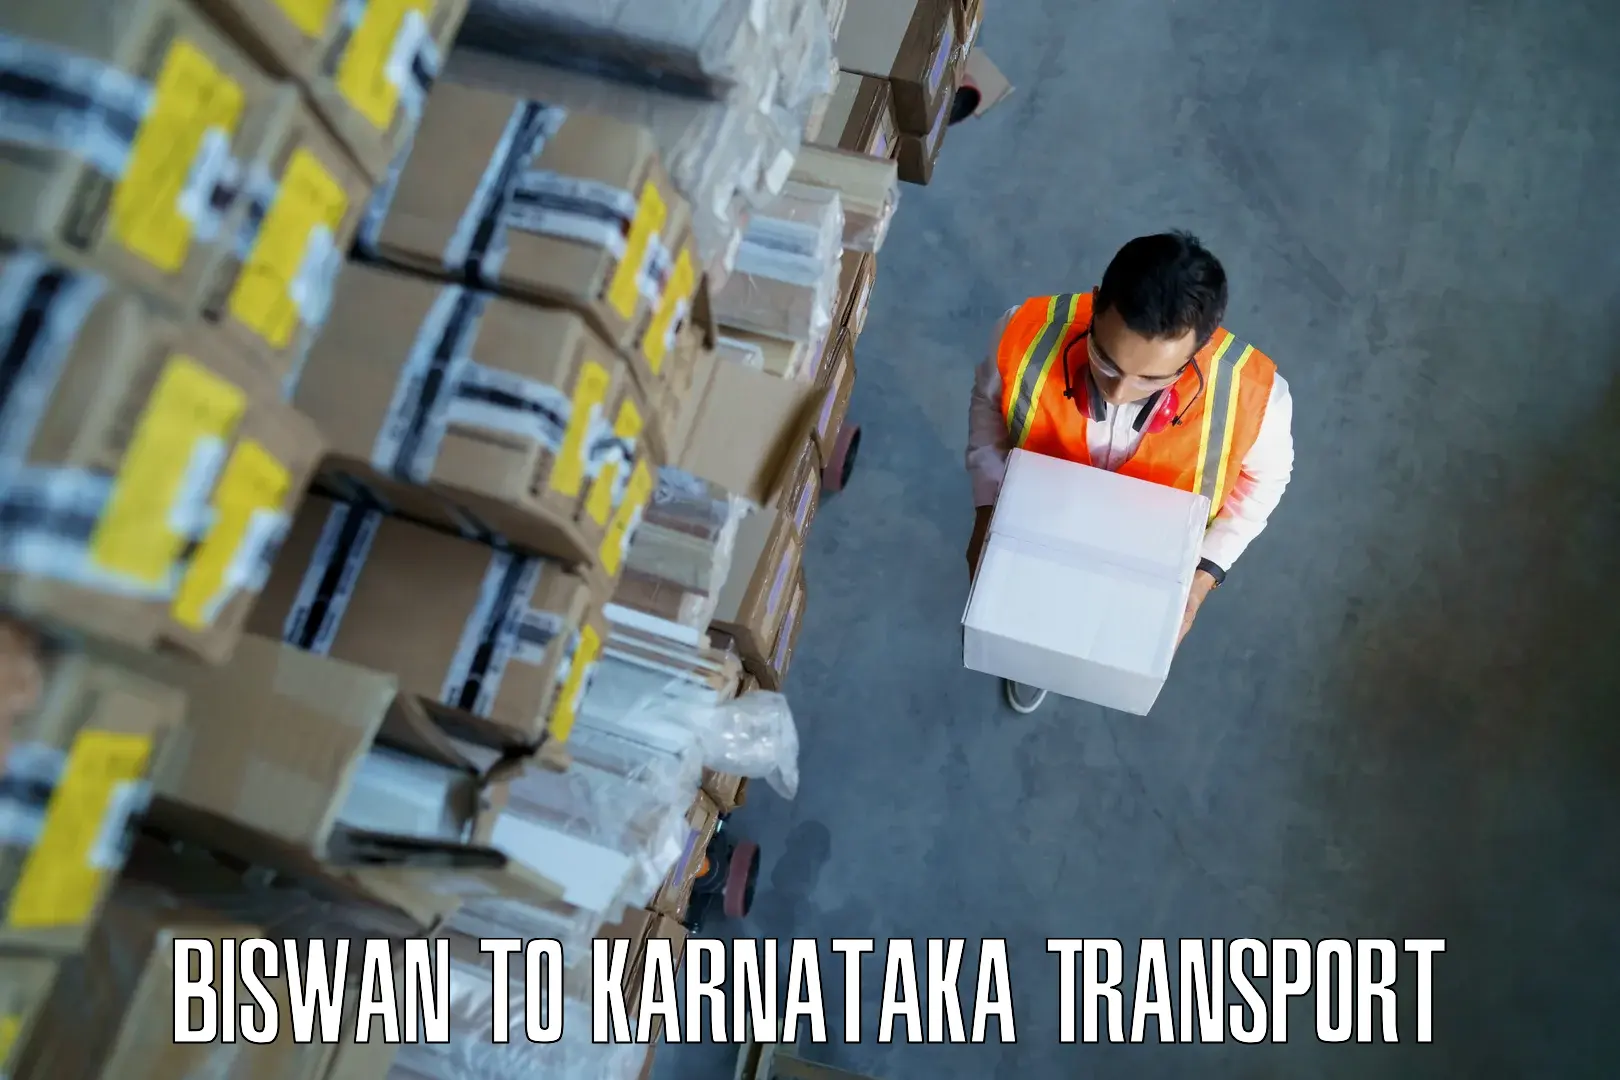 Two wheeler transport services Biswan to Karnataka